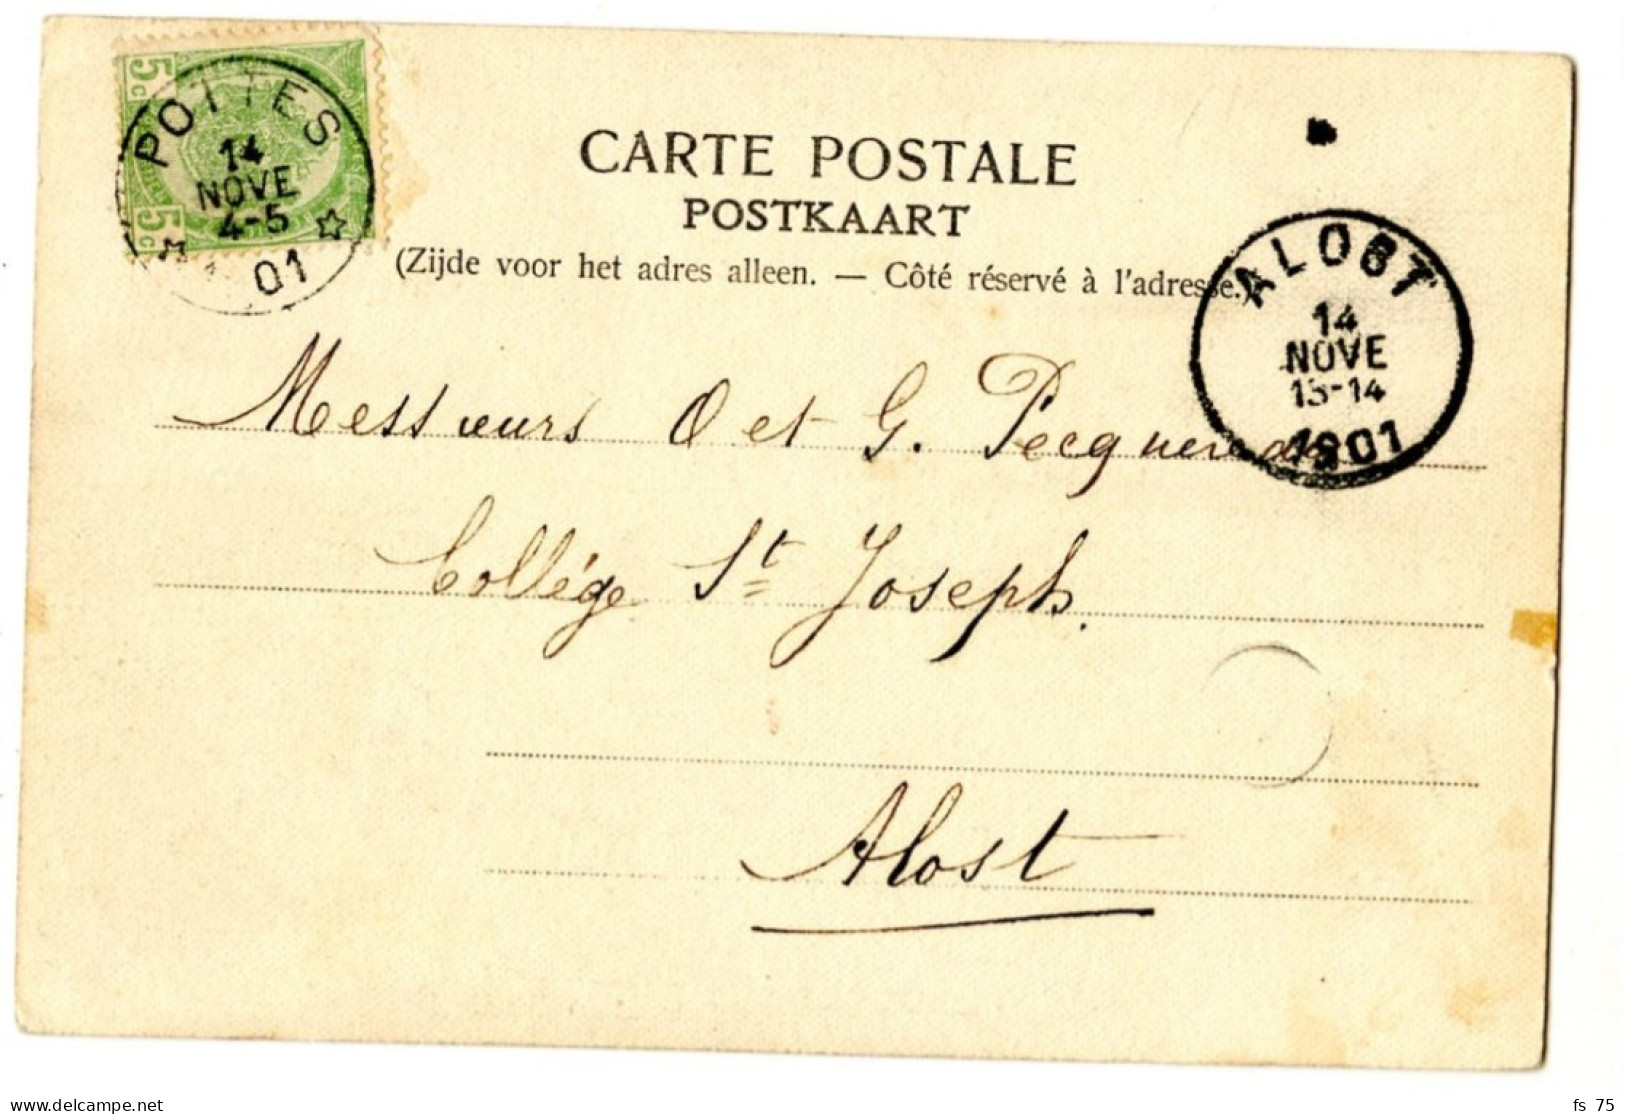 BELGIQUE - COB 56 SIMPLE CERCLE RELAIS A ETOILES POTTES SUR CARTE POSTALE, 1901 - Postmarks With Stars